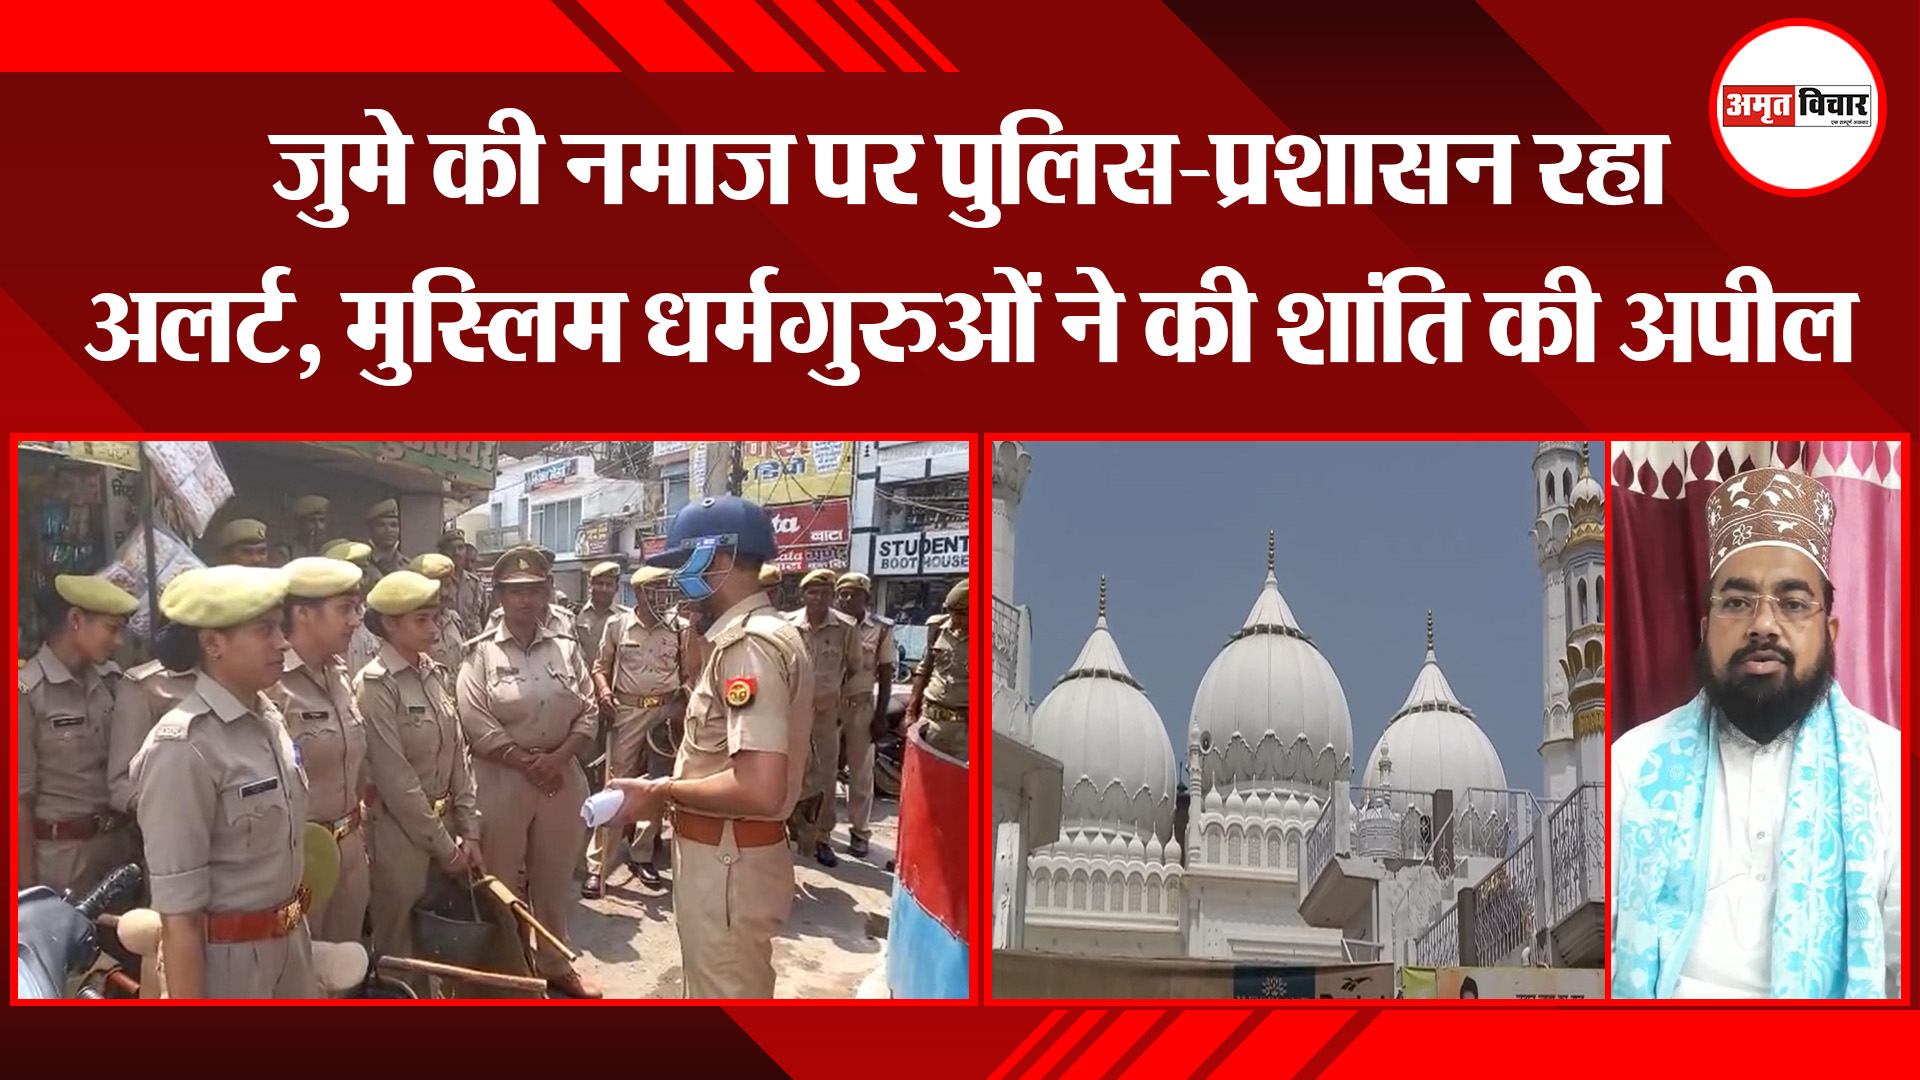 अयोध्या: जुमे की नमाज पर पुलिस-प्रशासन रहा अलर्ट, मुस्लिम धर्मगुरुओं ने की शांति की अपील